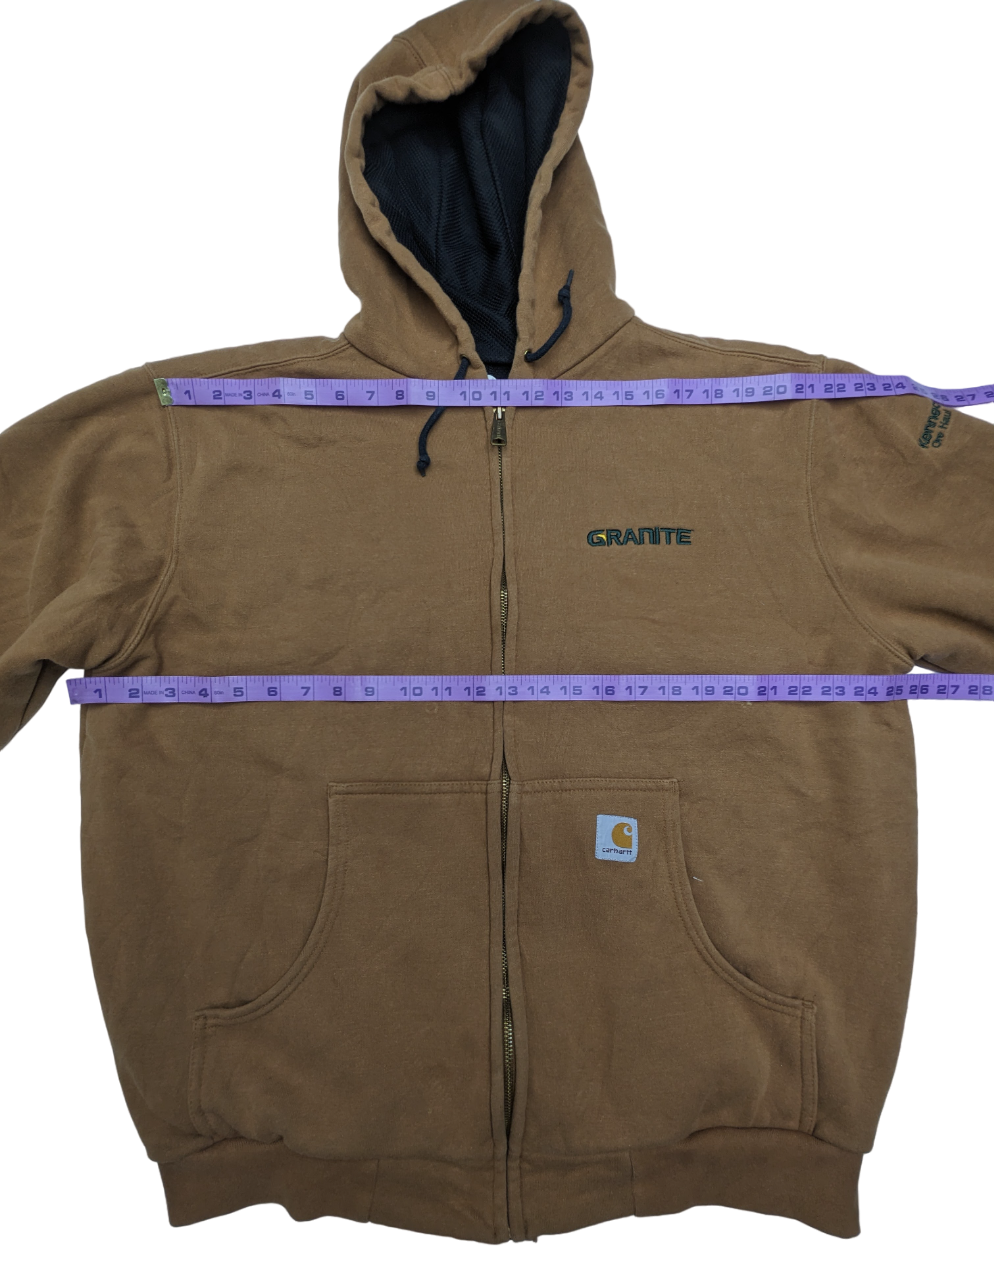 Carhartt J149 Jacket 1 pc 4 lbs C0419205-05